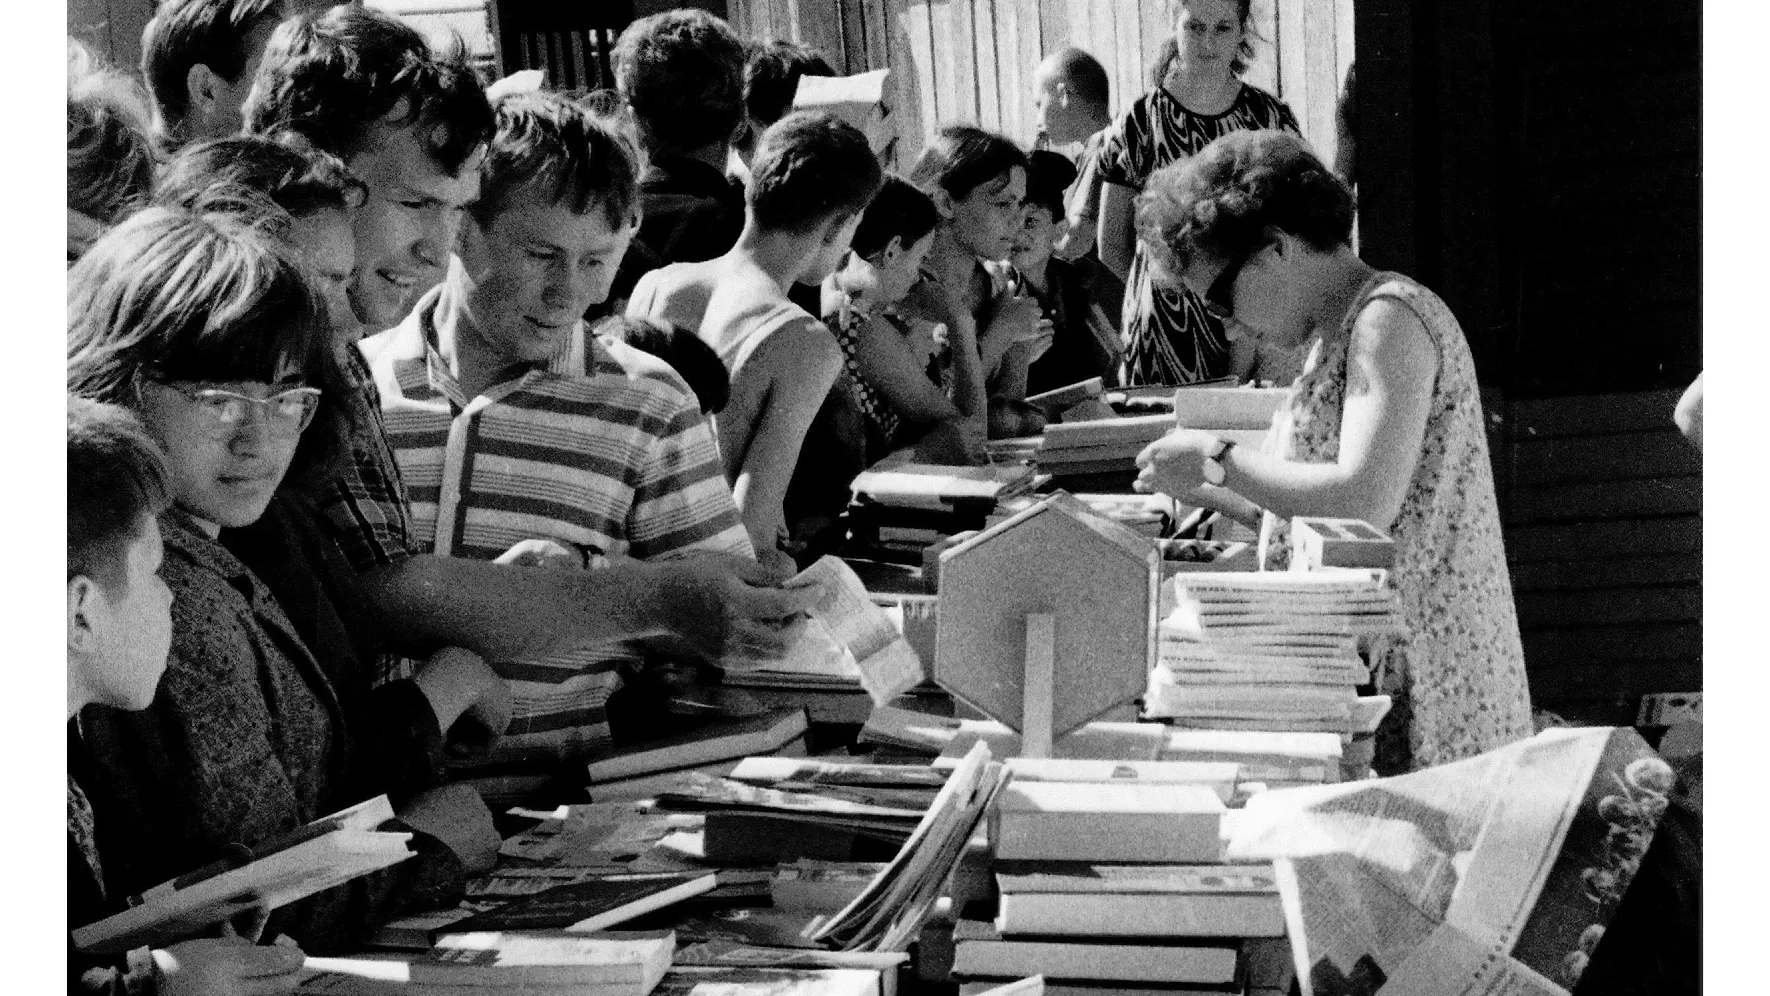 Выставки и ярмарки были излюбленной формой работы библиотекарей. Салехард, 70-е годы. Фото из личного архива Андрея Дробинина